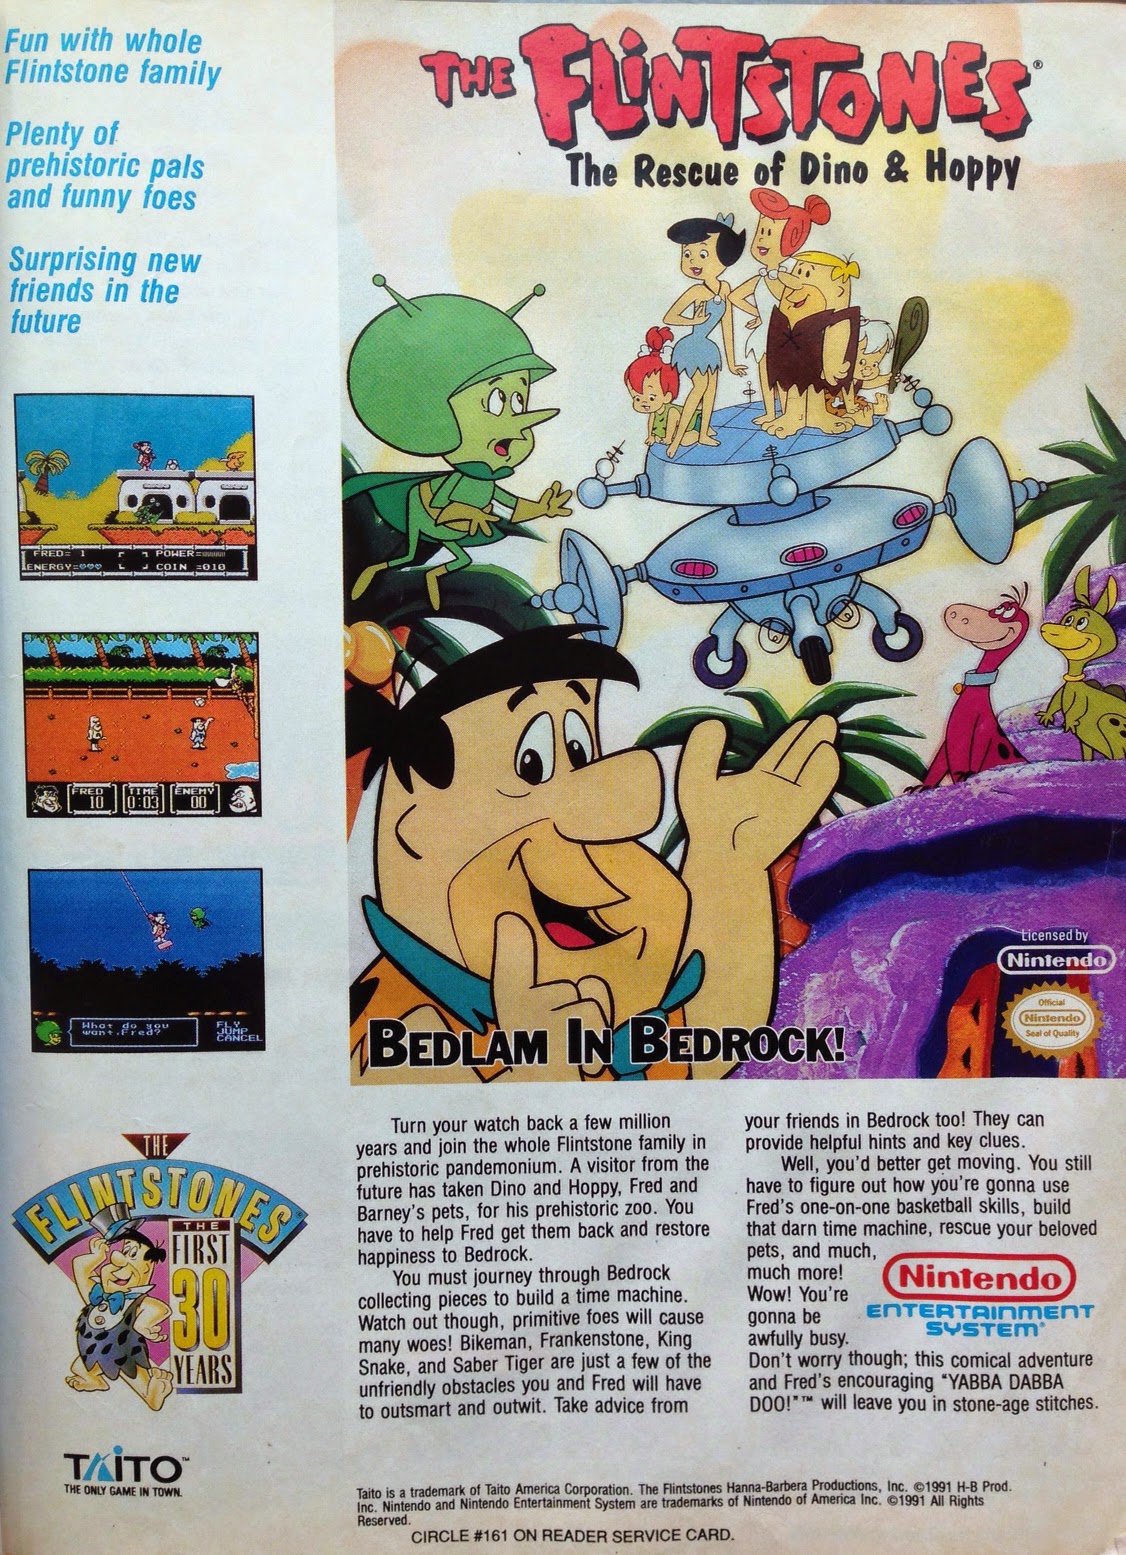 The Flintstones for NES advertisement